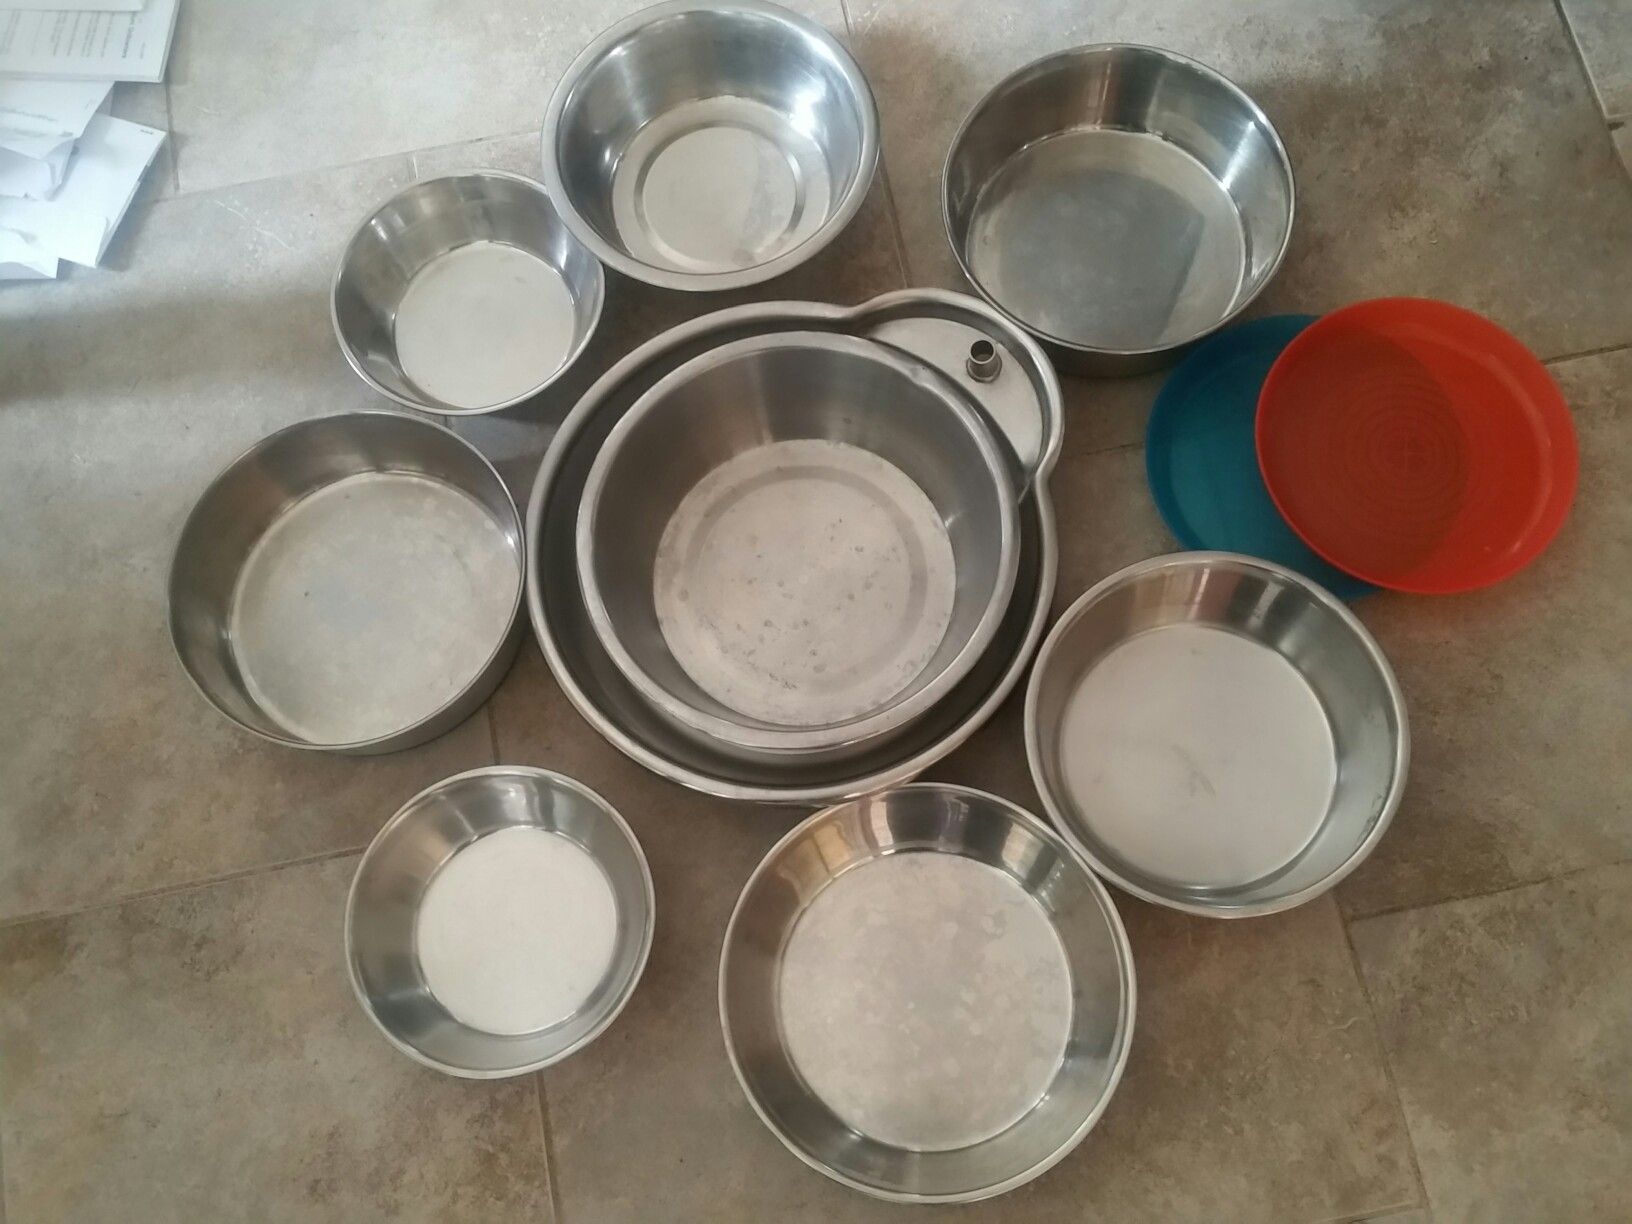 Dog bowls - MAKE AN OFFER